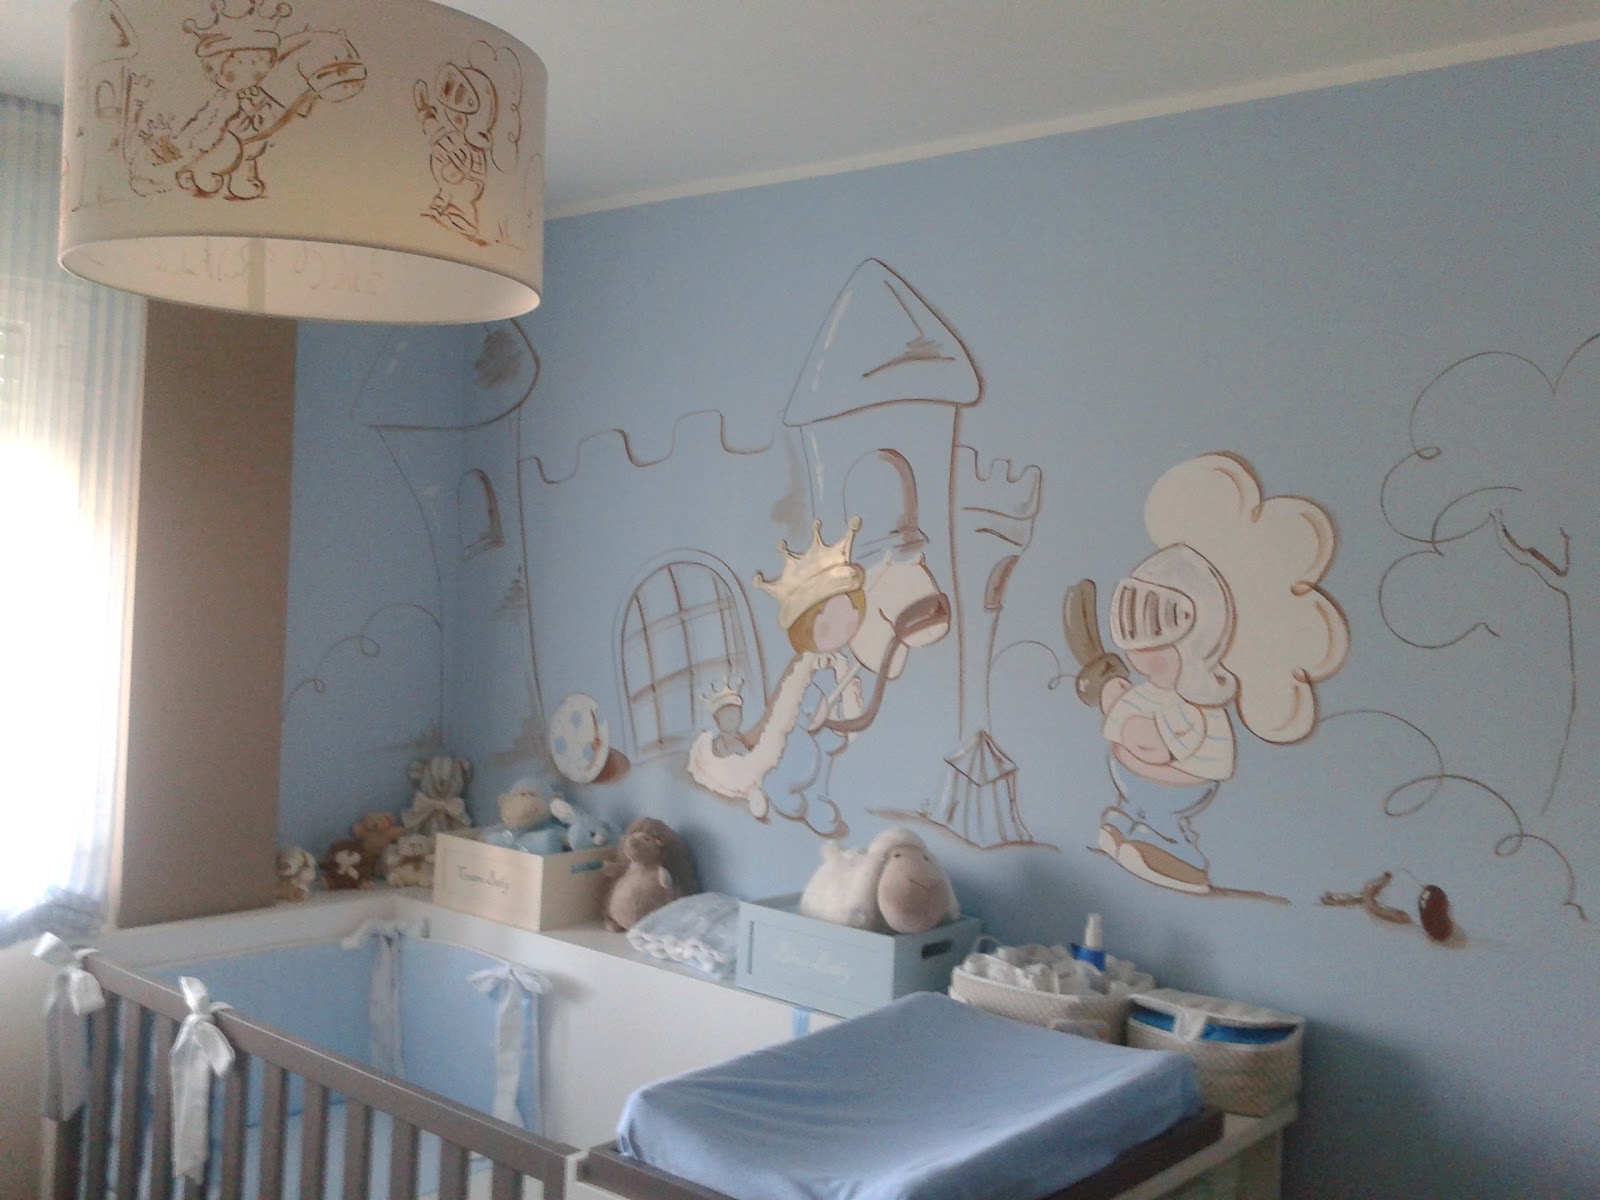 Décoration murale de chambre d'enfant : Comment la choisir ?